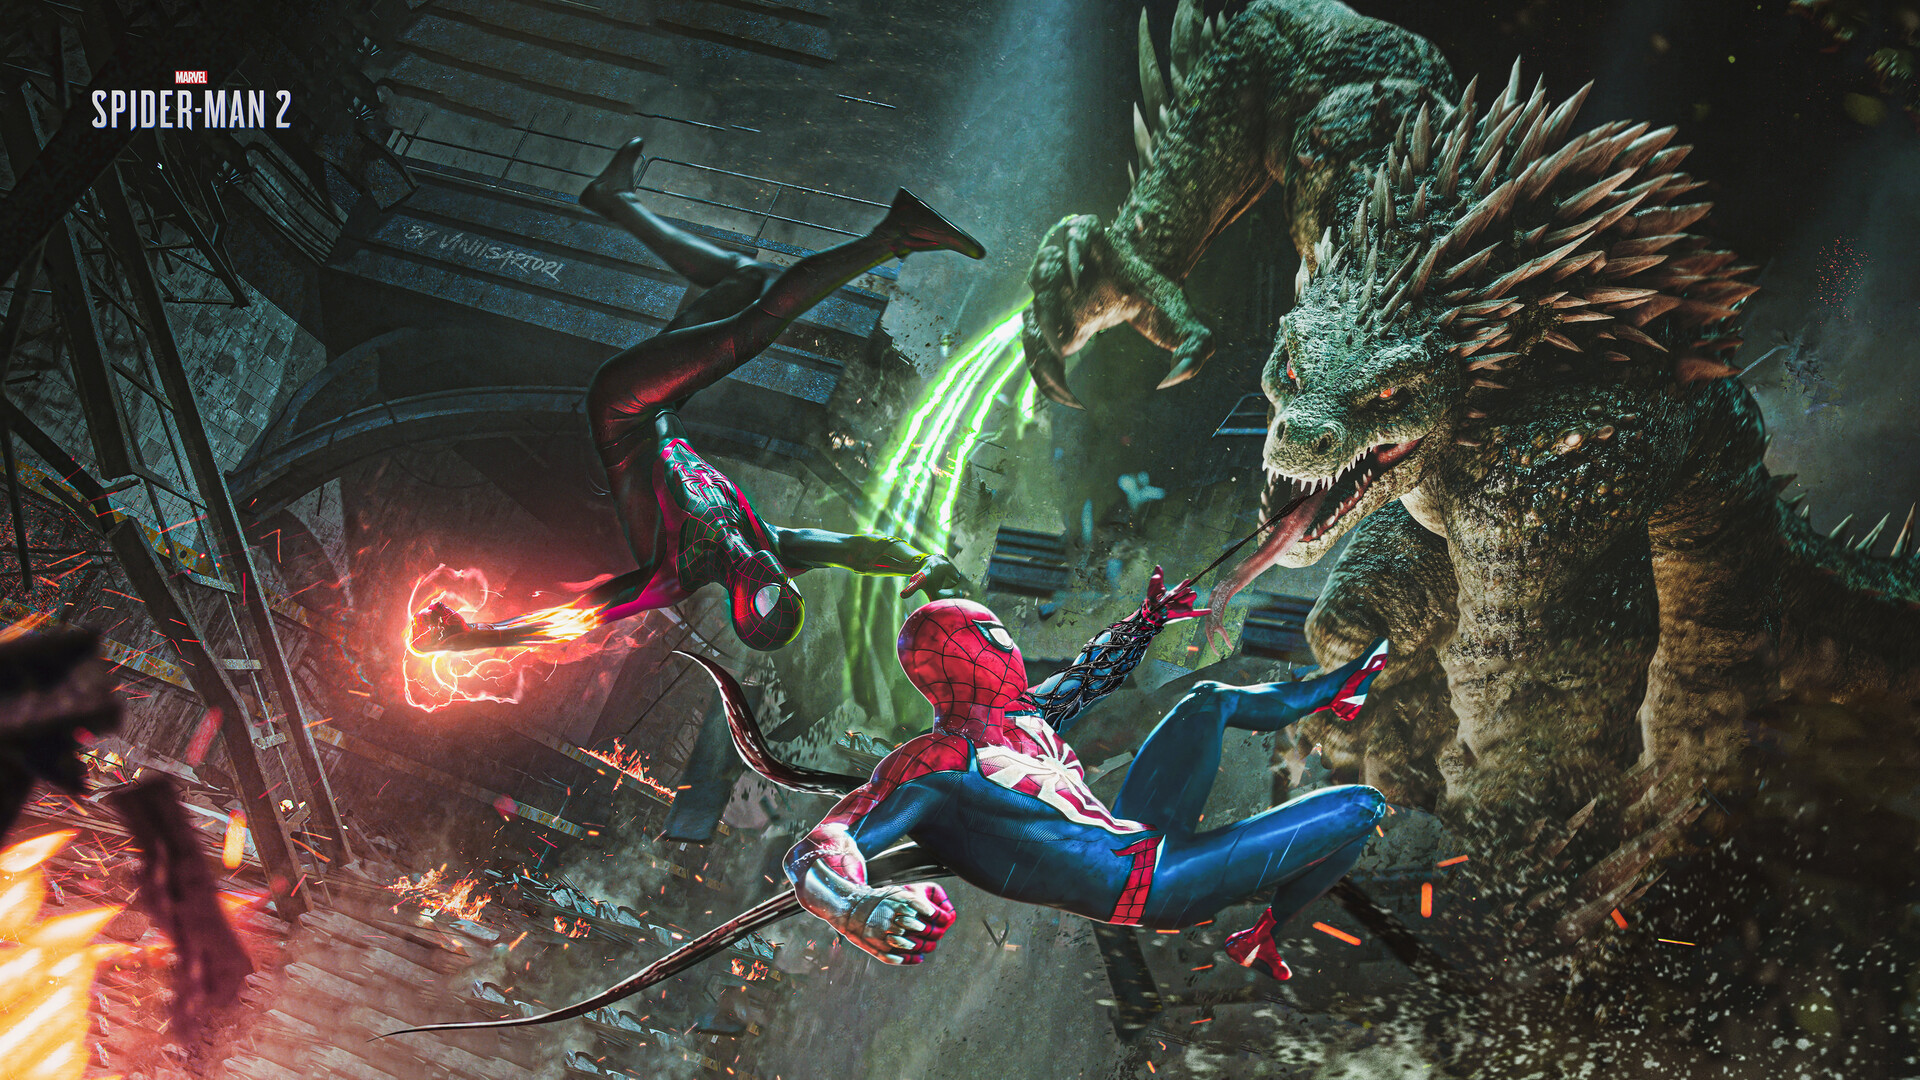 ArtStation - Marvel's Spider-Man 2 Cover Art